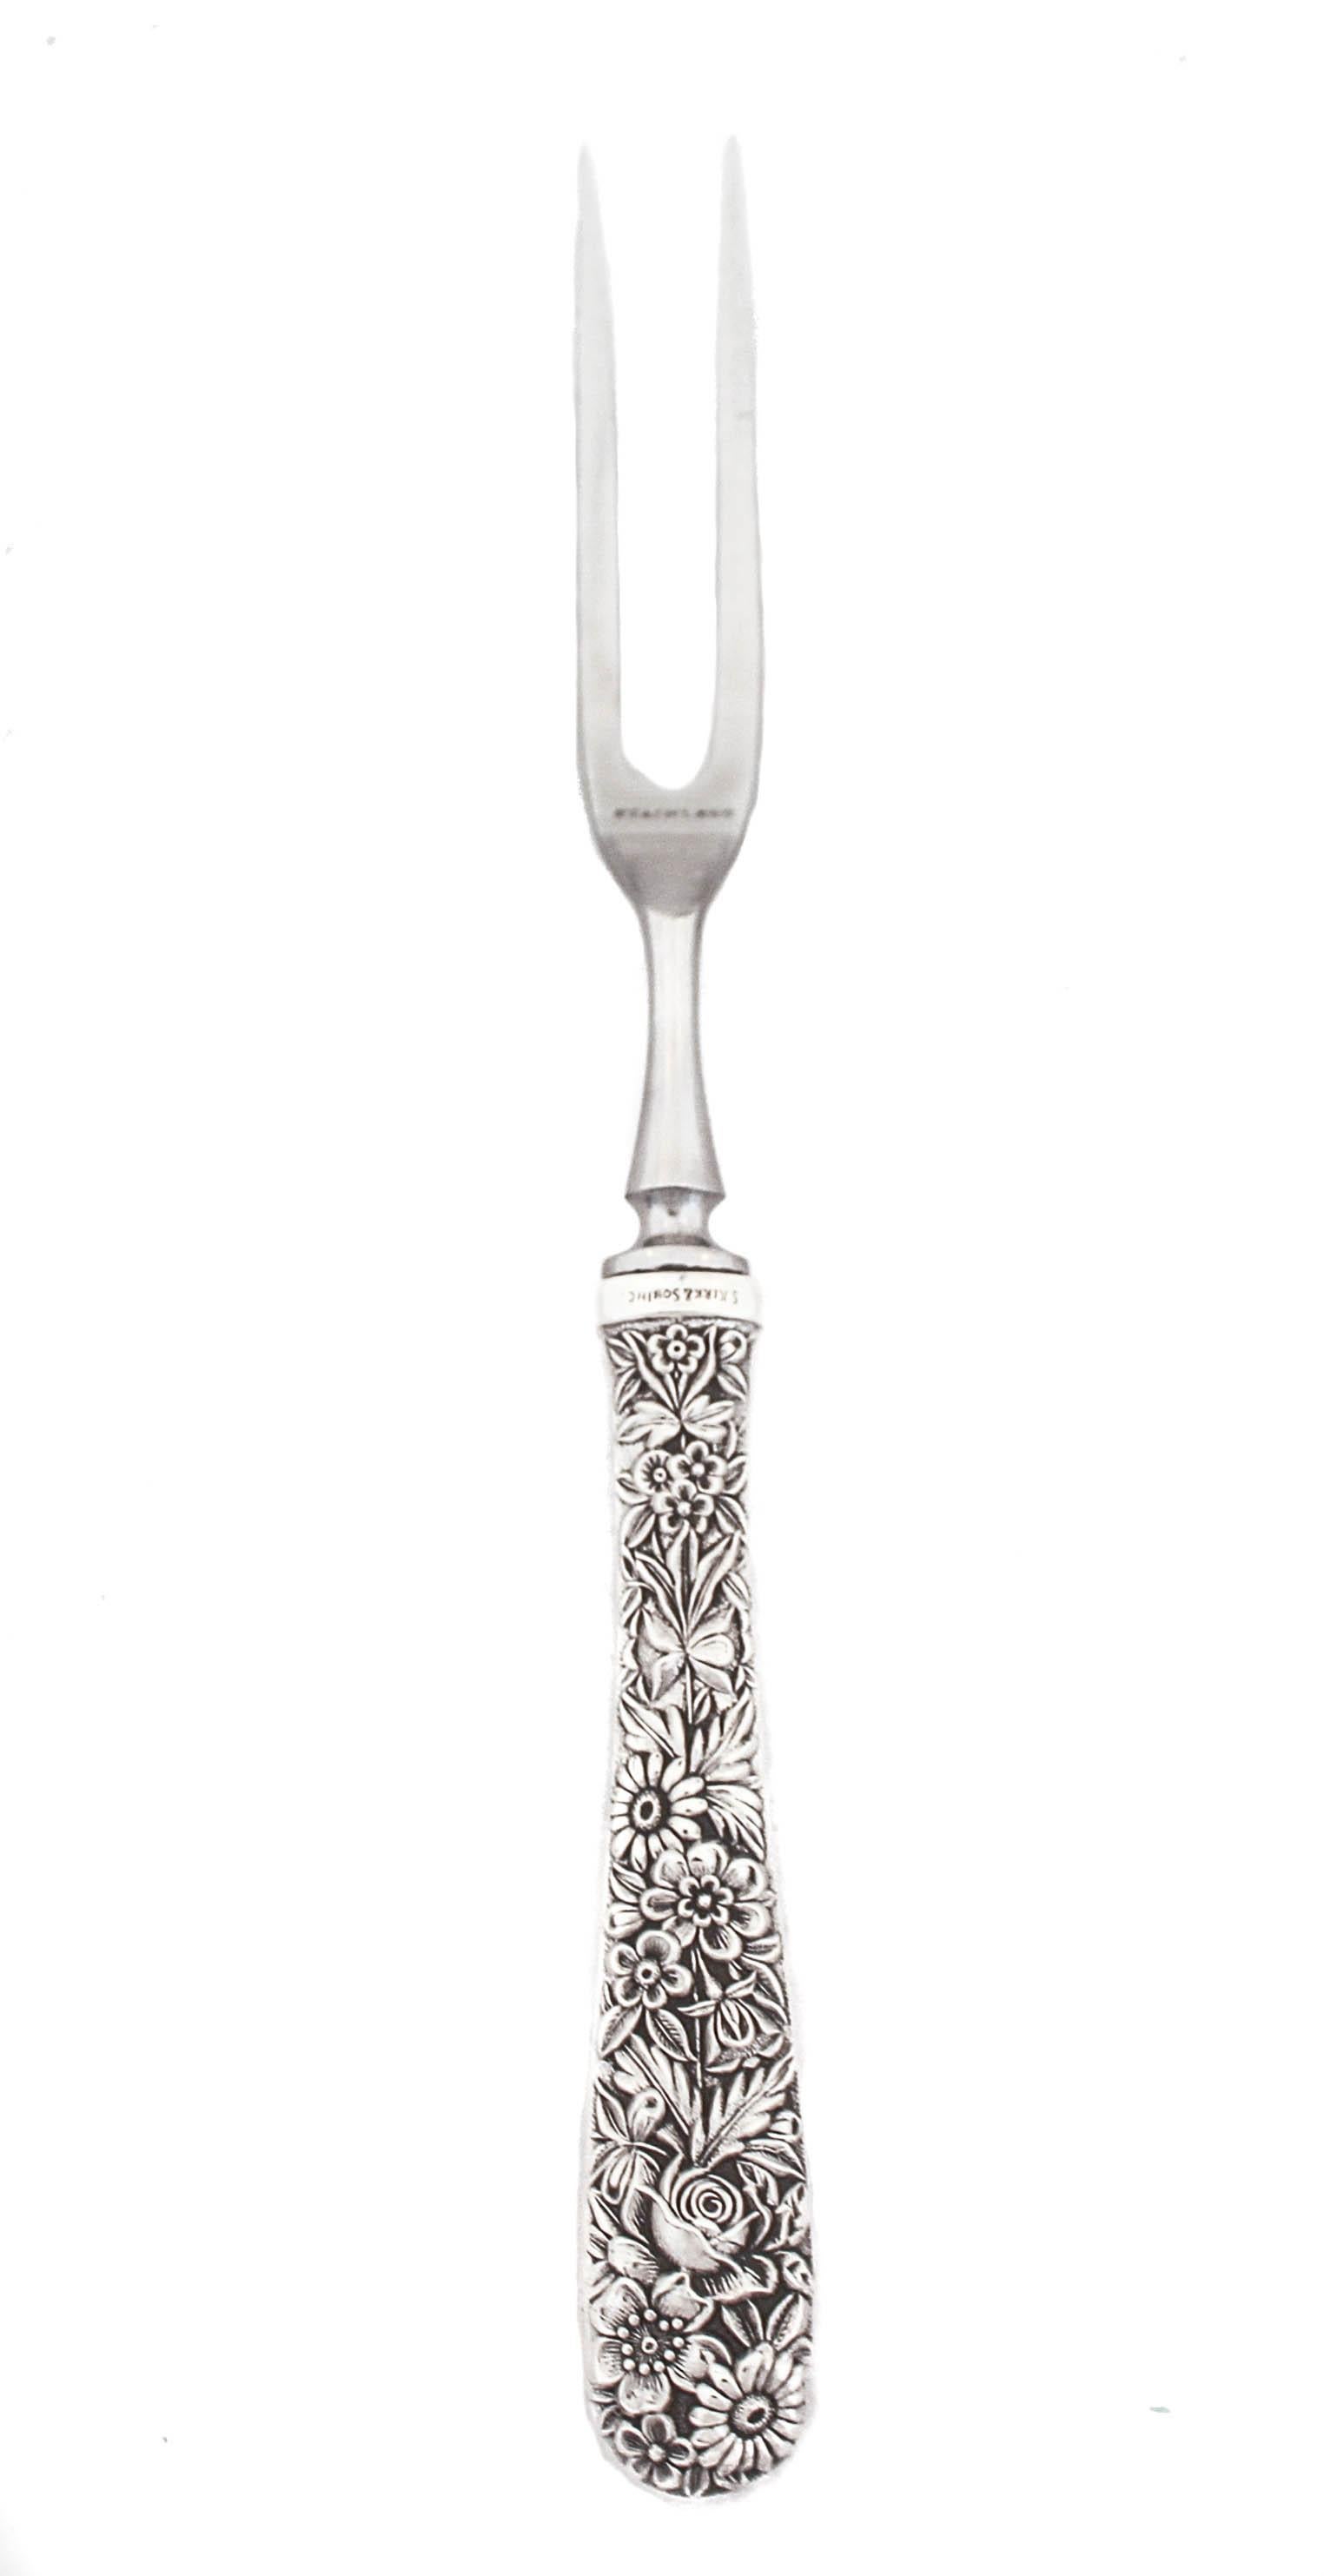 Wir freuen uns, Ihnen diese Schnitzgabel und das Messer aus Sterlingsilber mit dem Muster Rose von Kirk-Stieff Silver Company anbieten zu können. Ausgeblasene Blumen und Blätter zieren die Griffe im klassischen Rosenmuster, das so beliebt und zum